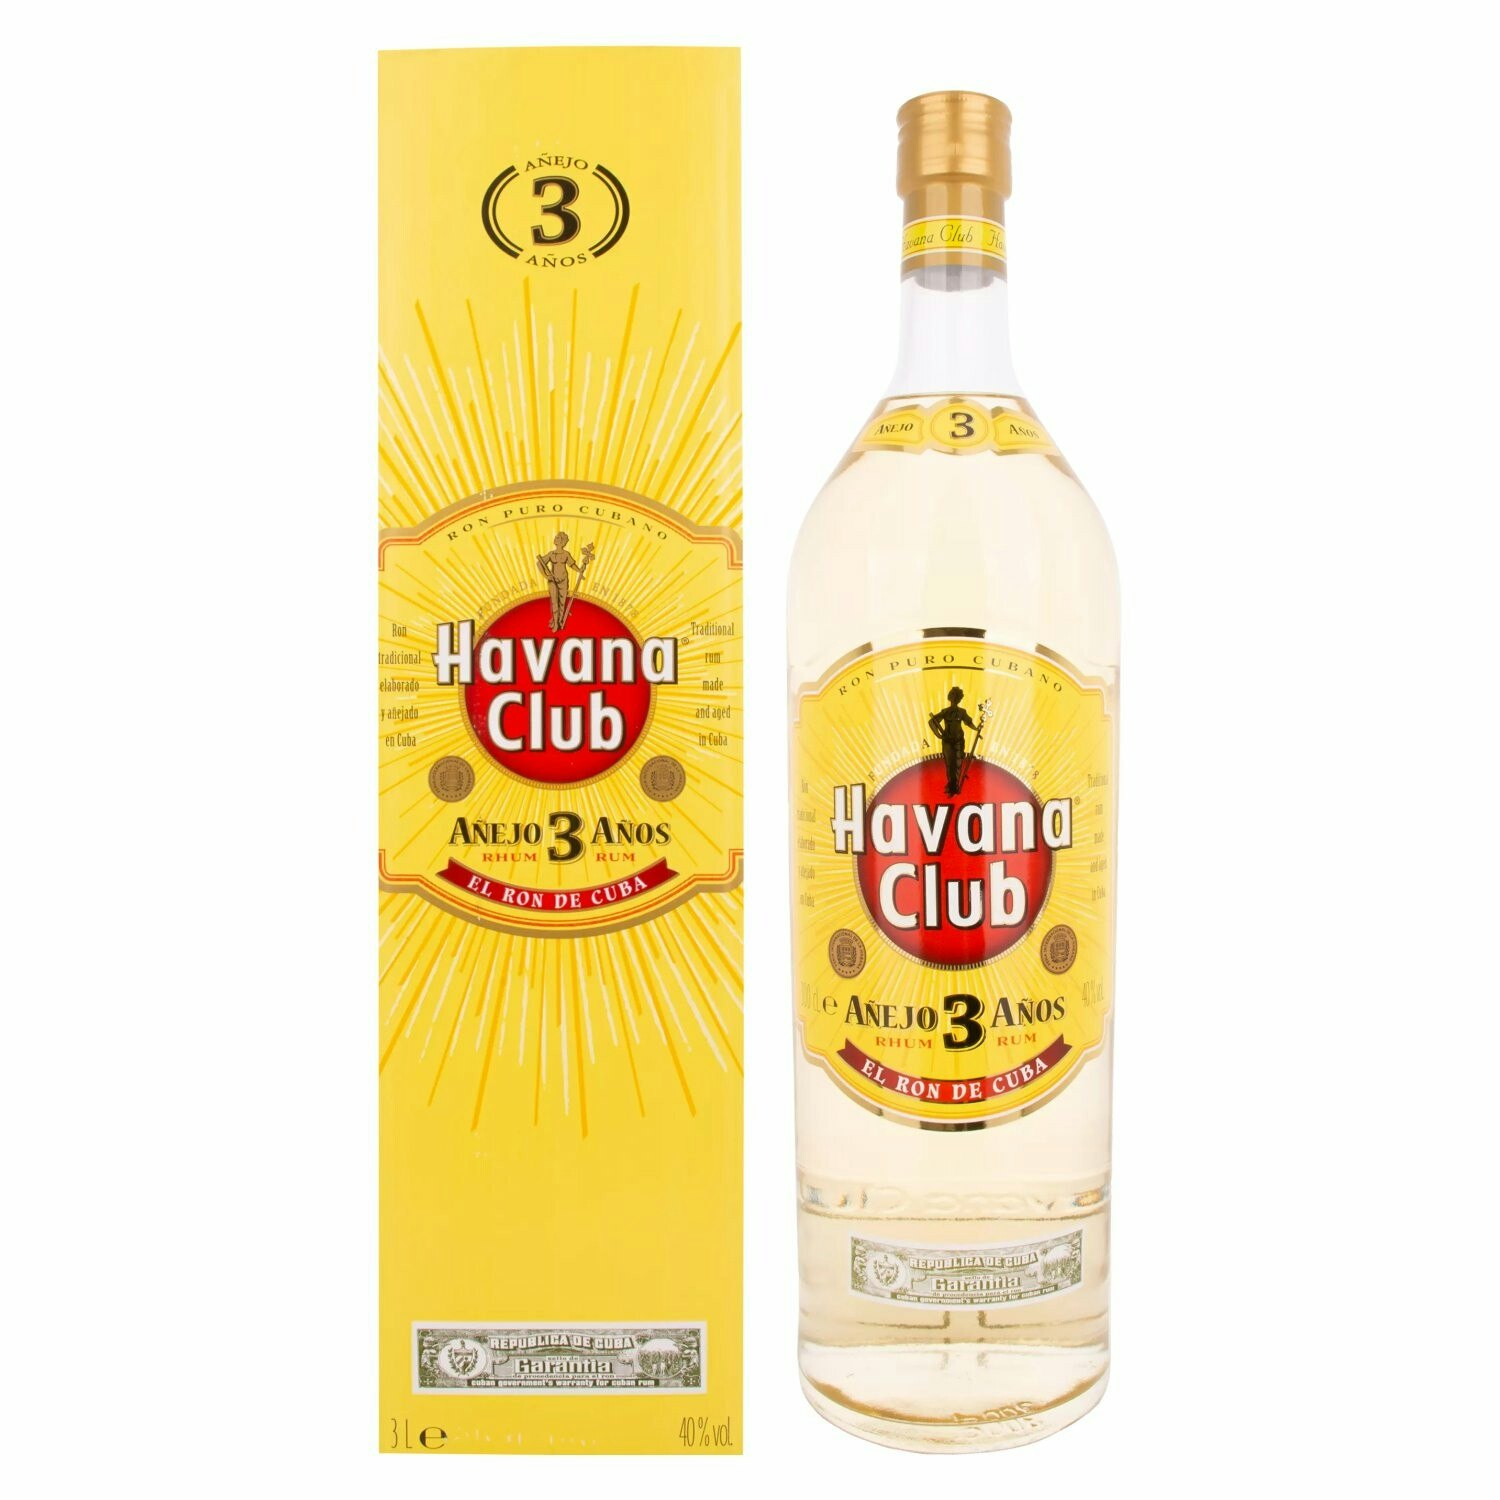 Havana Club Añejo 3 Años Rum 40% Vol. 3l in Giftbox